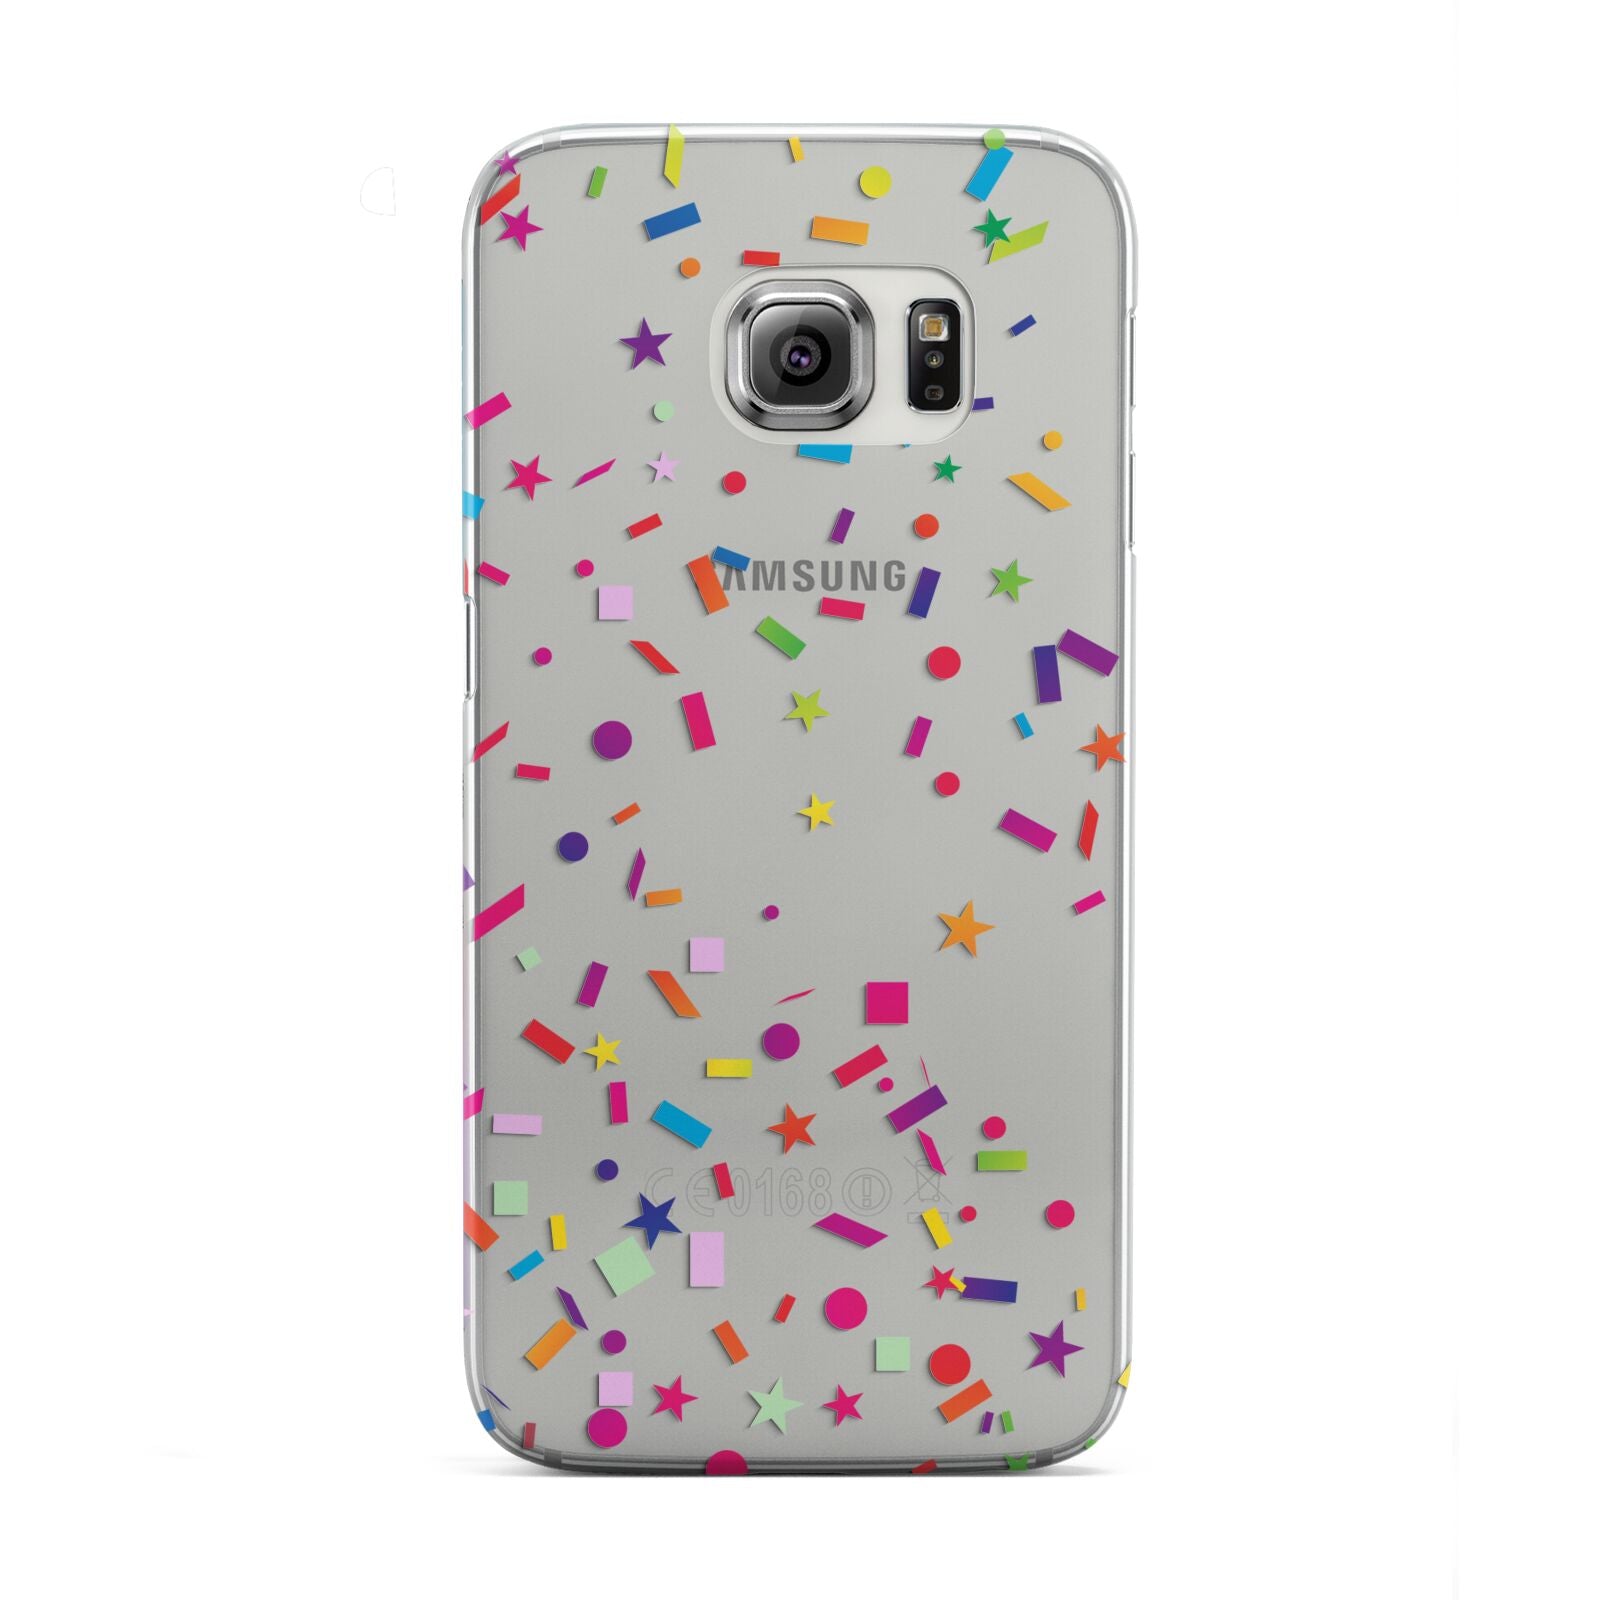 Confetti Samsung Galaxy S6 Edge Case